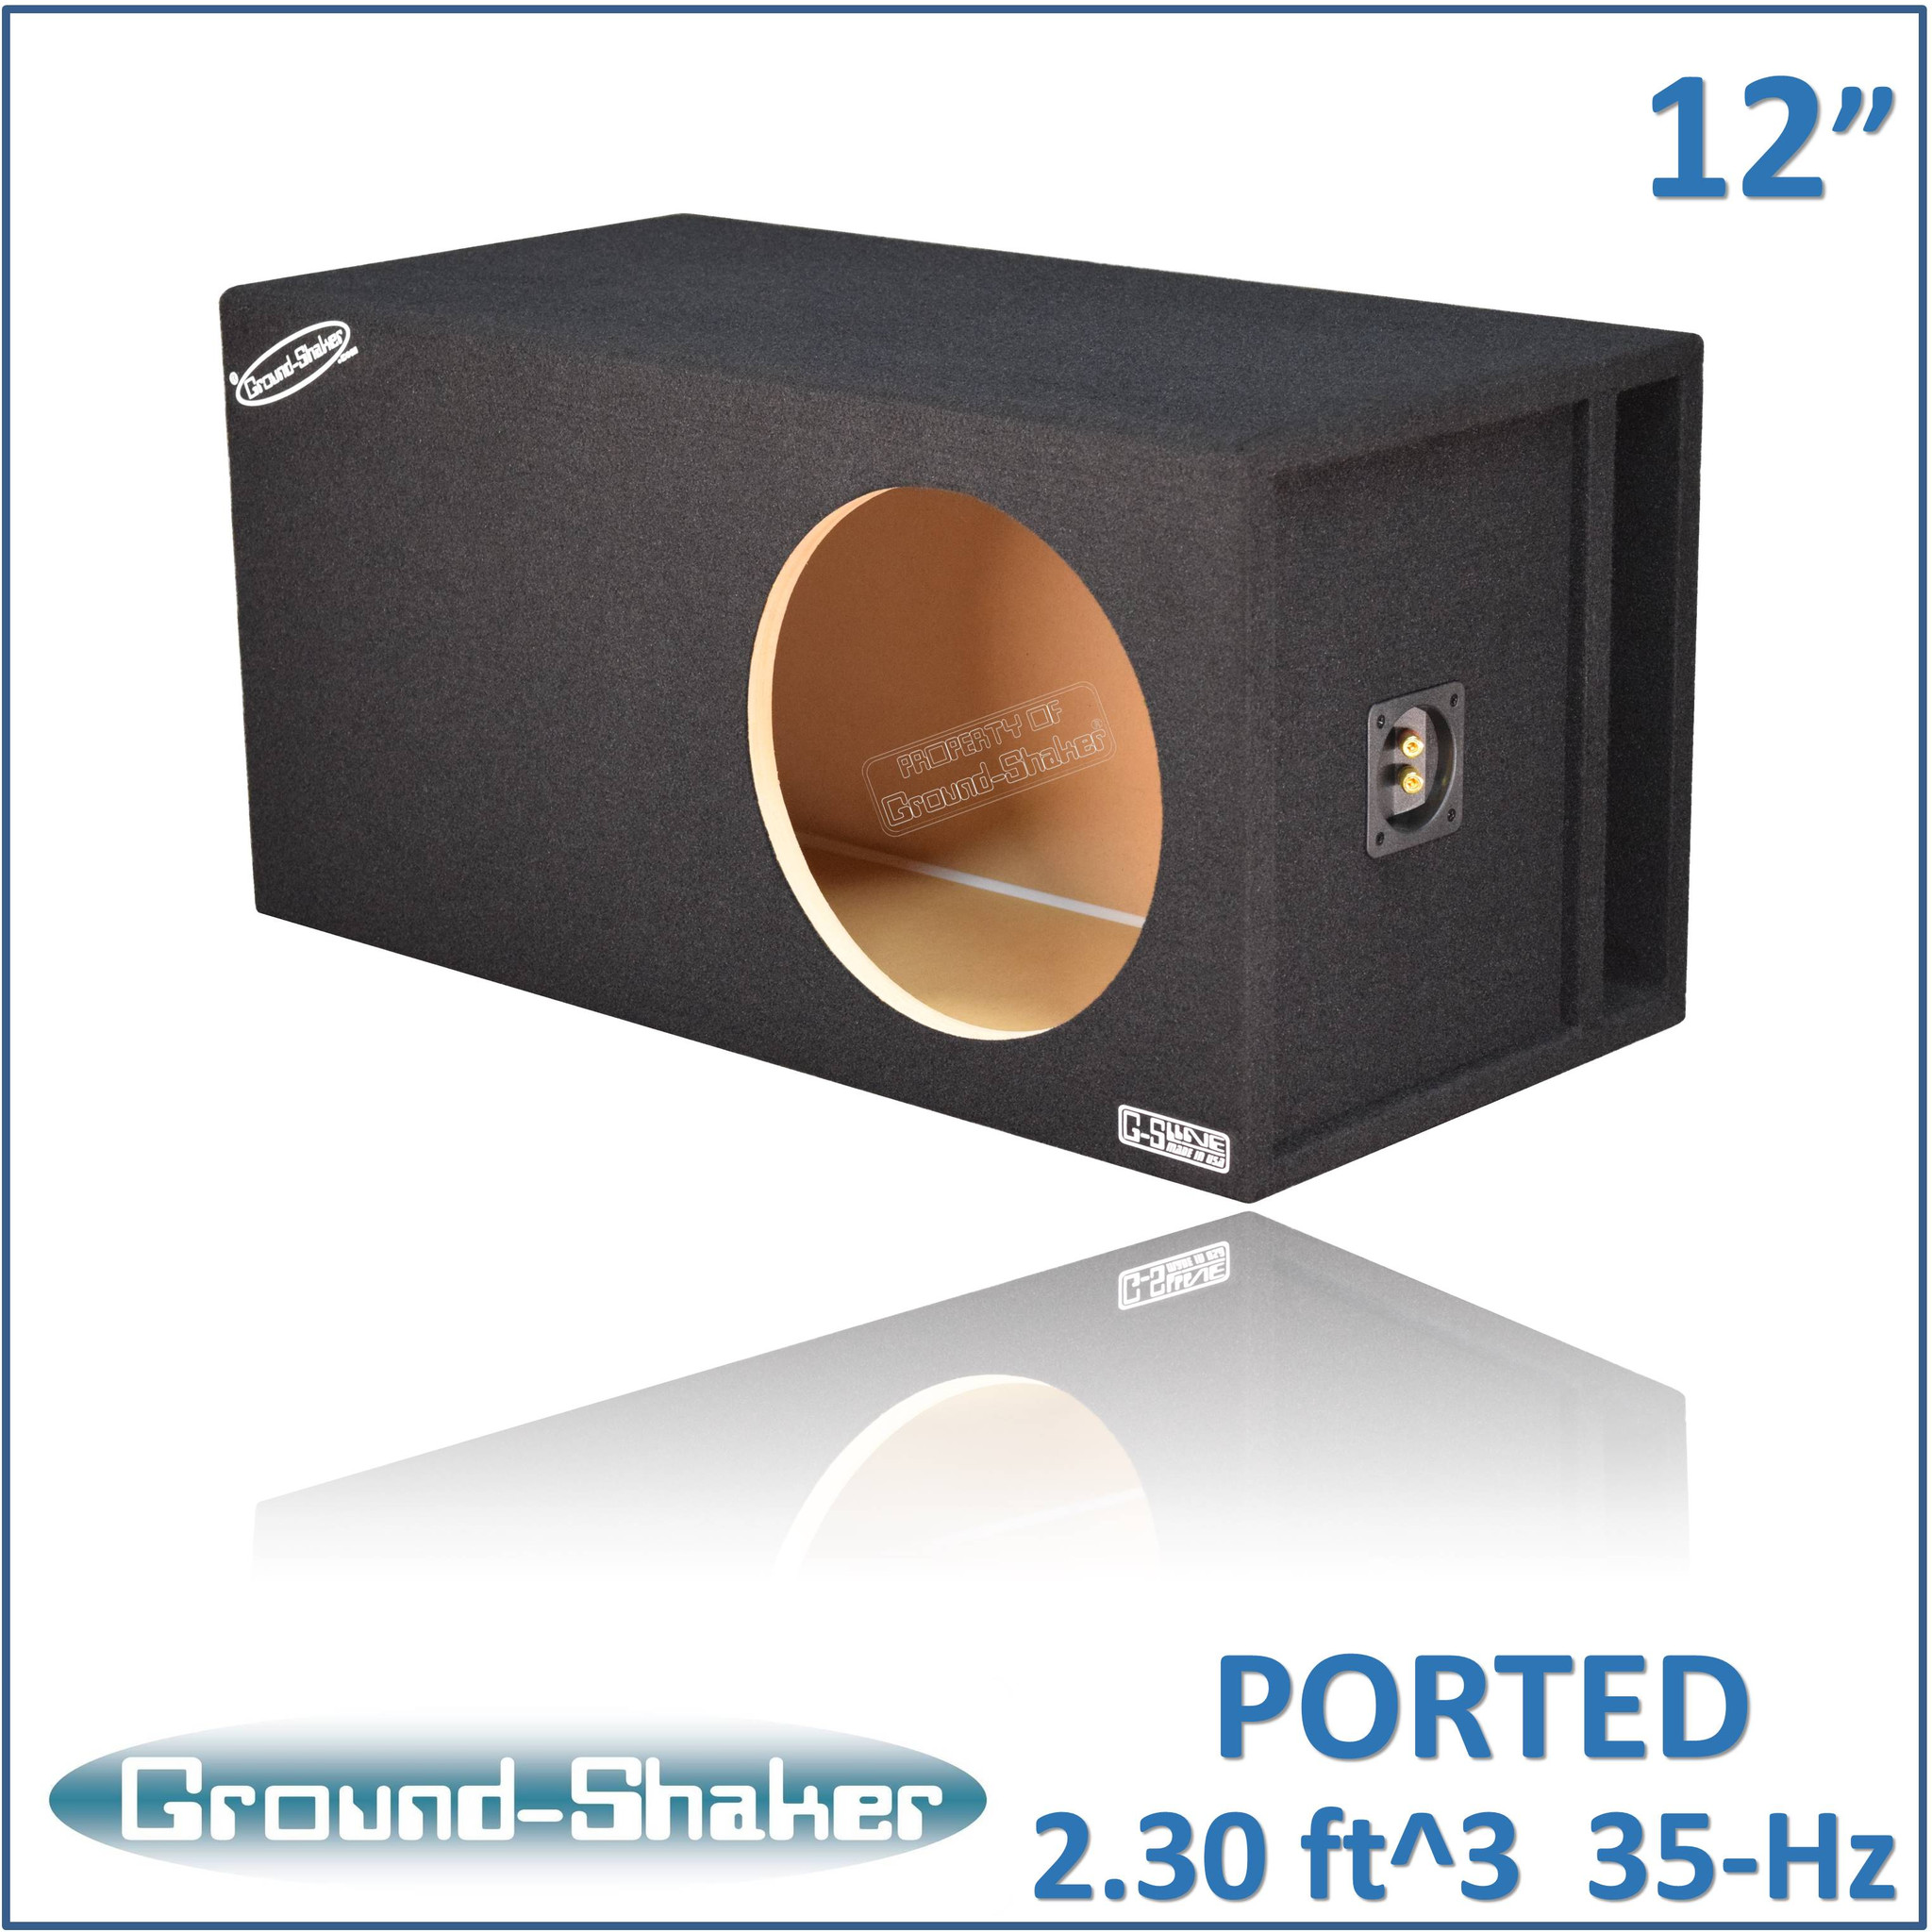 Single 6" Sub box Ground-shaker 6" Sub woofer box 6" Single Ported Sub Box 